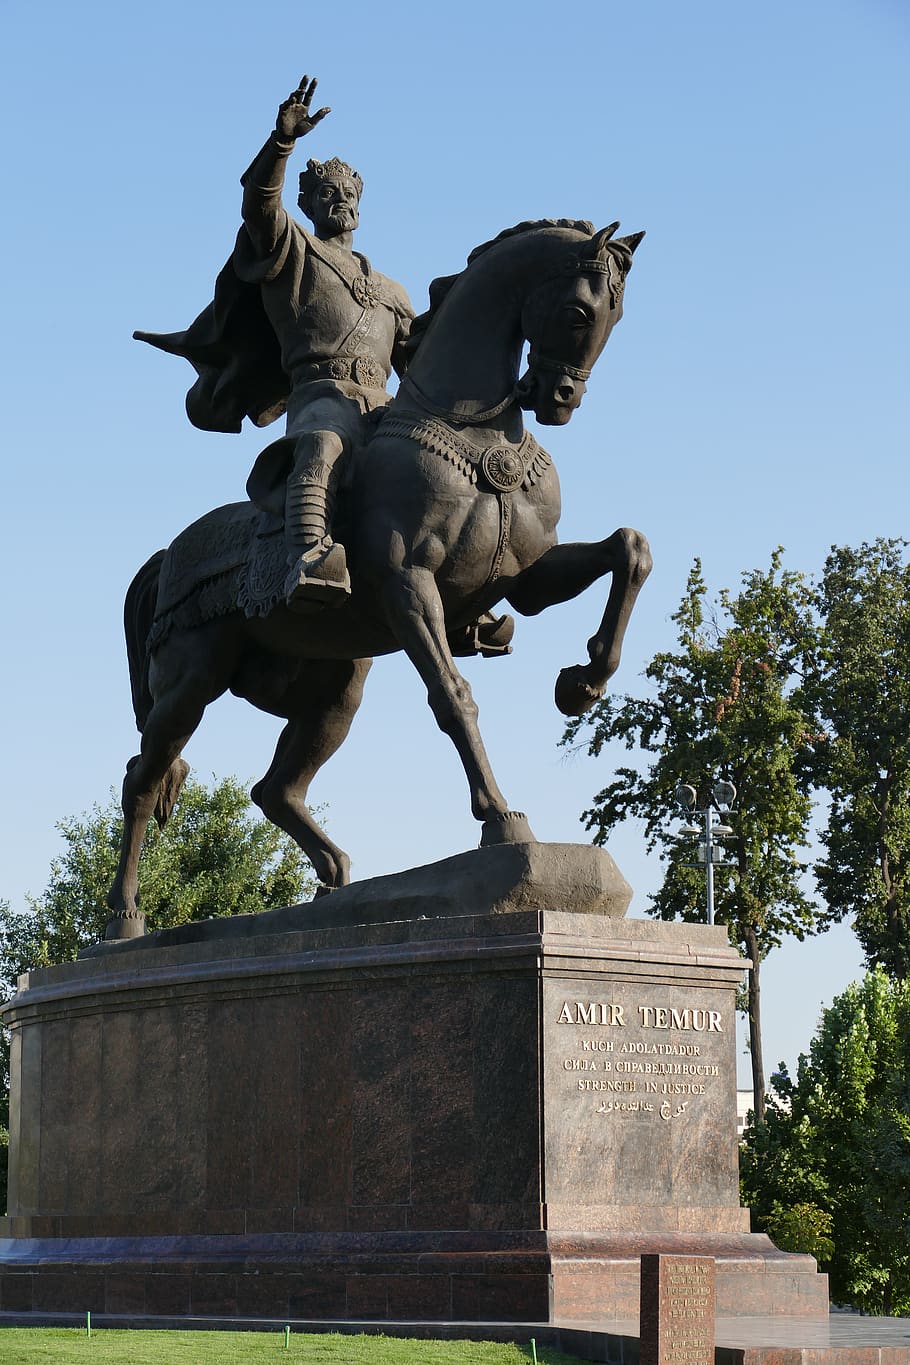 uzbequistão, tashkent, capital, ásia central, estrada da seda, monumento, figura, estátua, cavalo, reiter